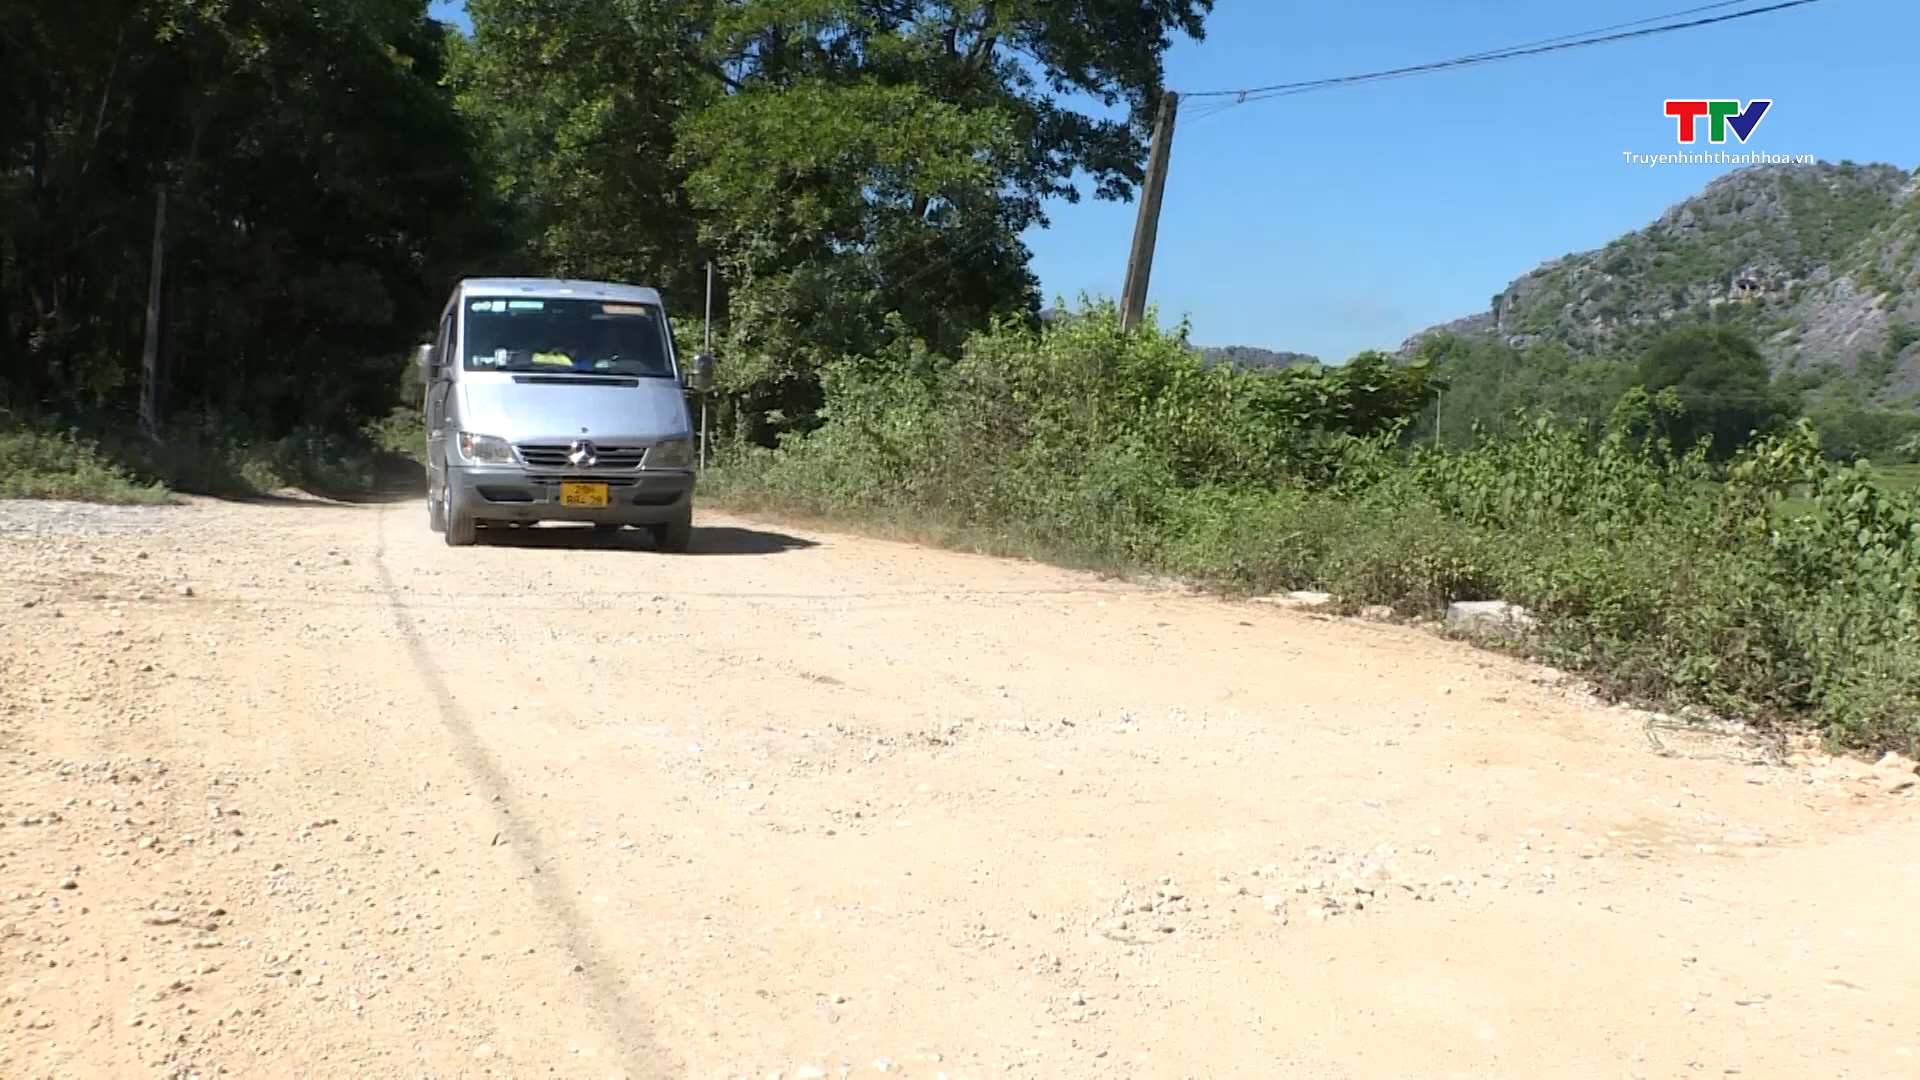 Sớm hoàn trả tuyến đường từ quốc lộ 217 đi trung tâm xã Vĩnh An, huyện Vĩnh Lộc- Ảnh 1.